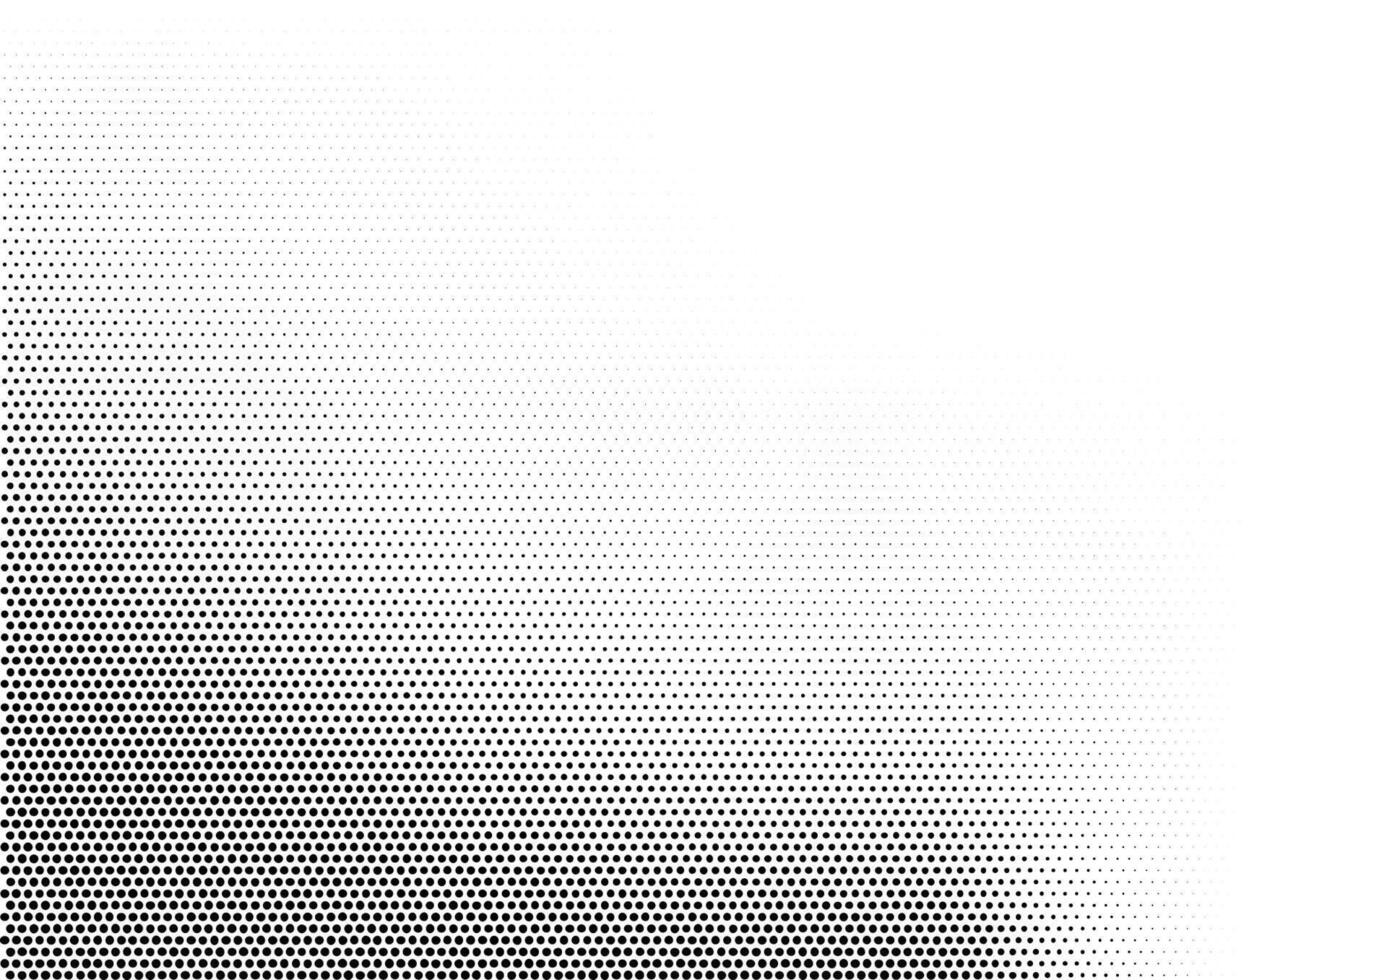 abstrakt horizontal Halbton einfarbig Hintergrund mit Punkte von anders Größe angesammelt im links Unterseite Winkel. Grunge Gradient gepunktet Textur. modern Vektor Illustration im schwarz und Weiß Farben.